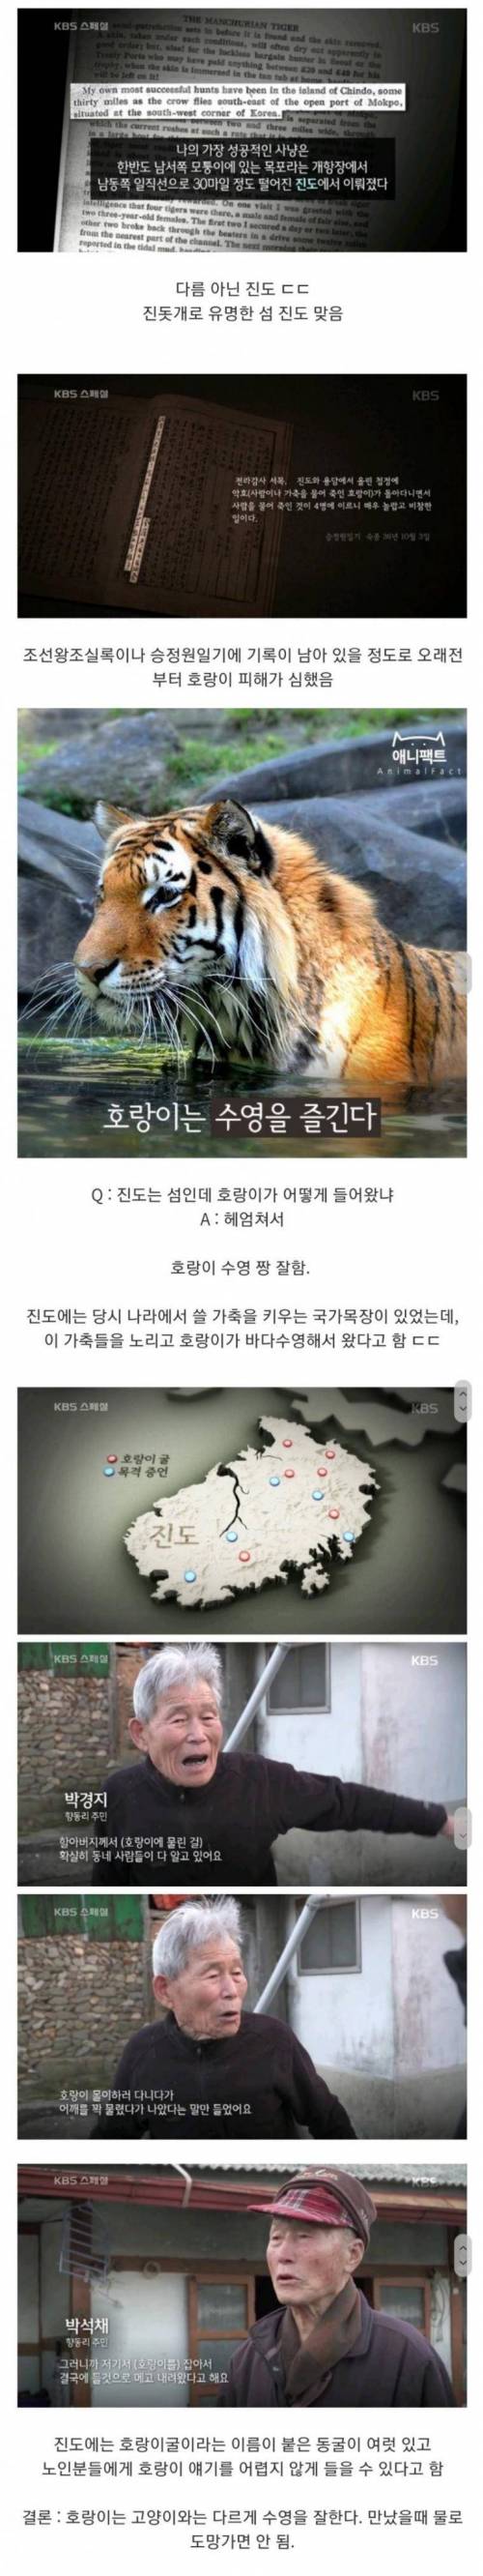 17 조선시대에 의외로 호랑이 피해가 많았던 지역.jpg